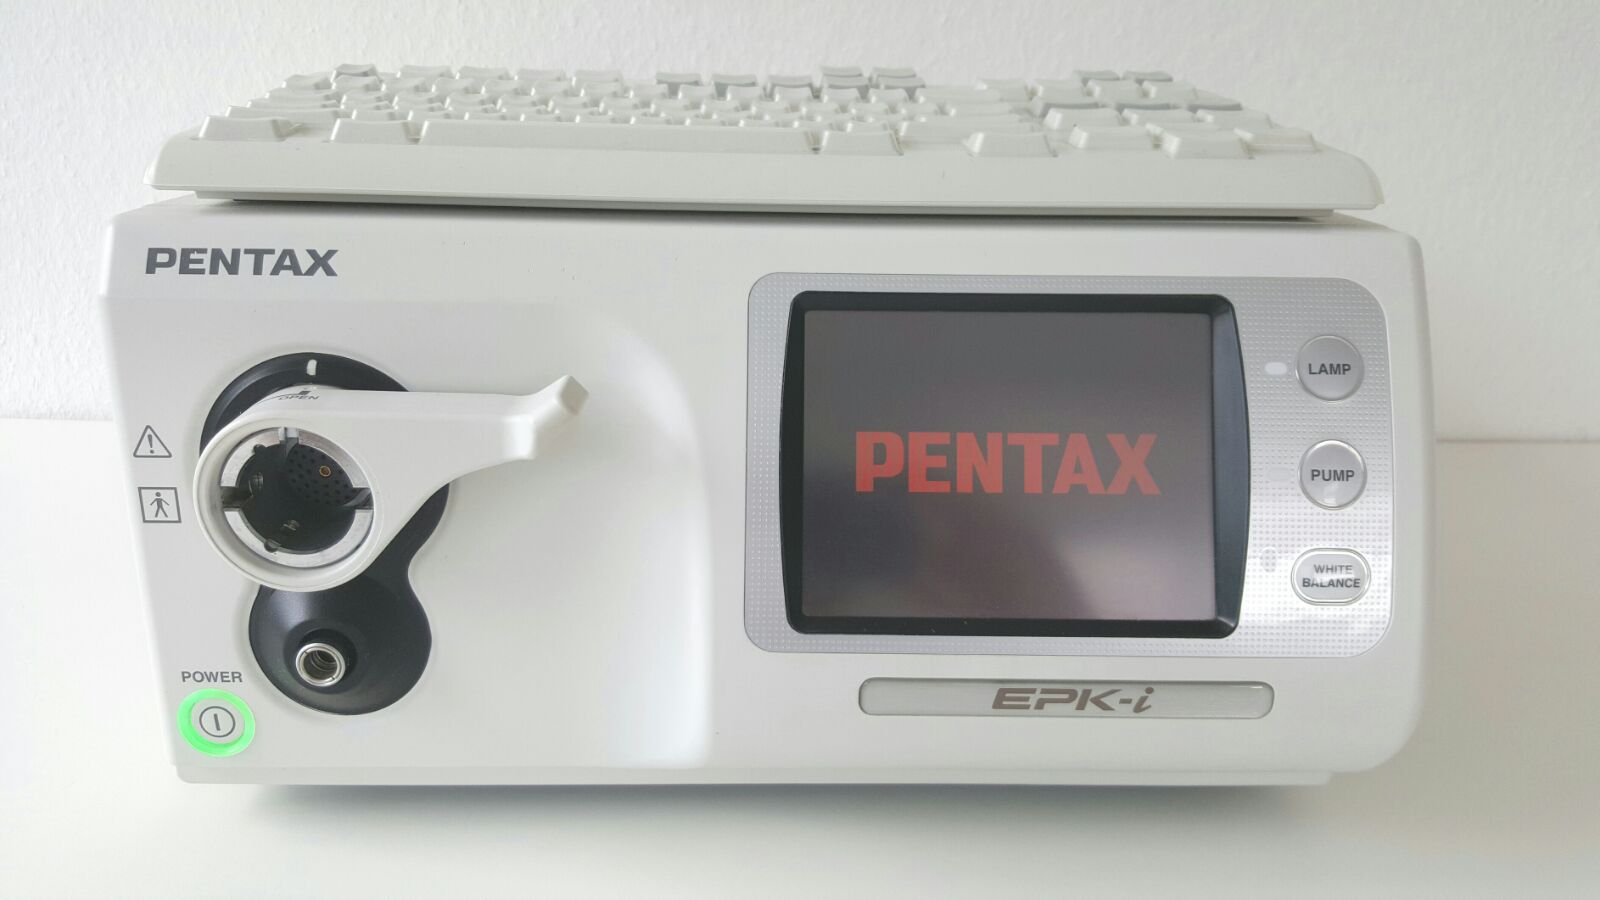 Pentax EPK-i